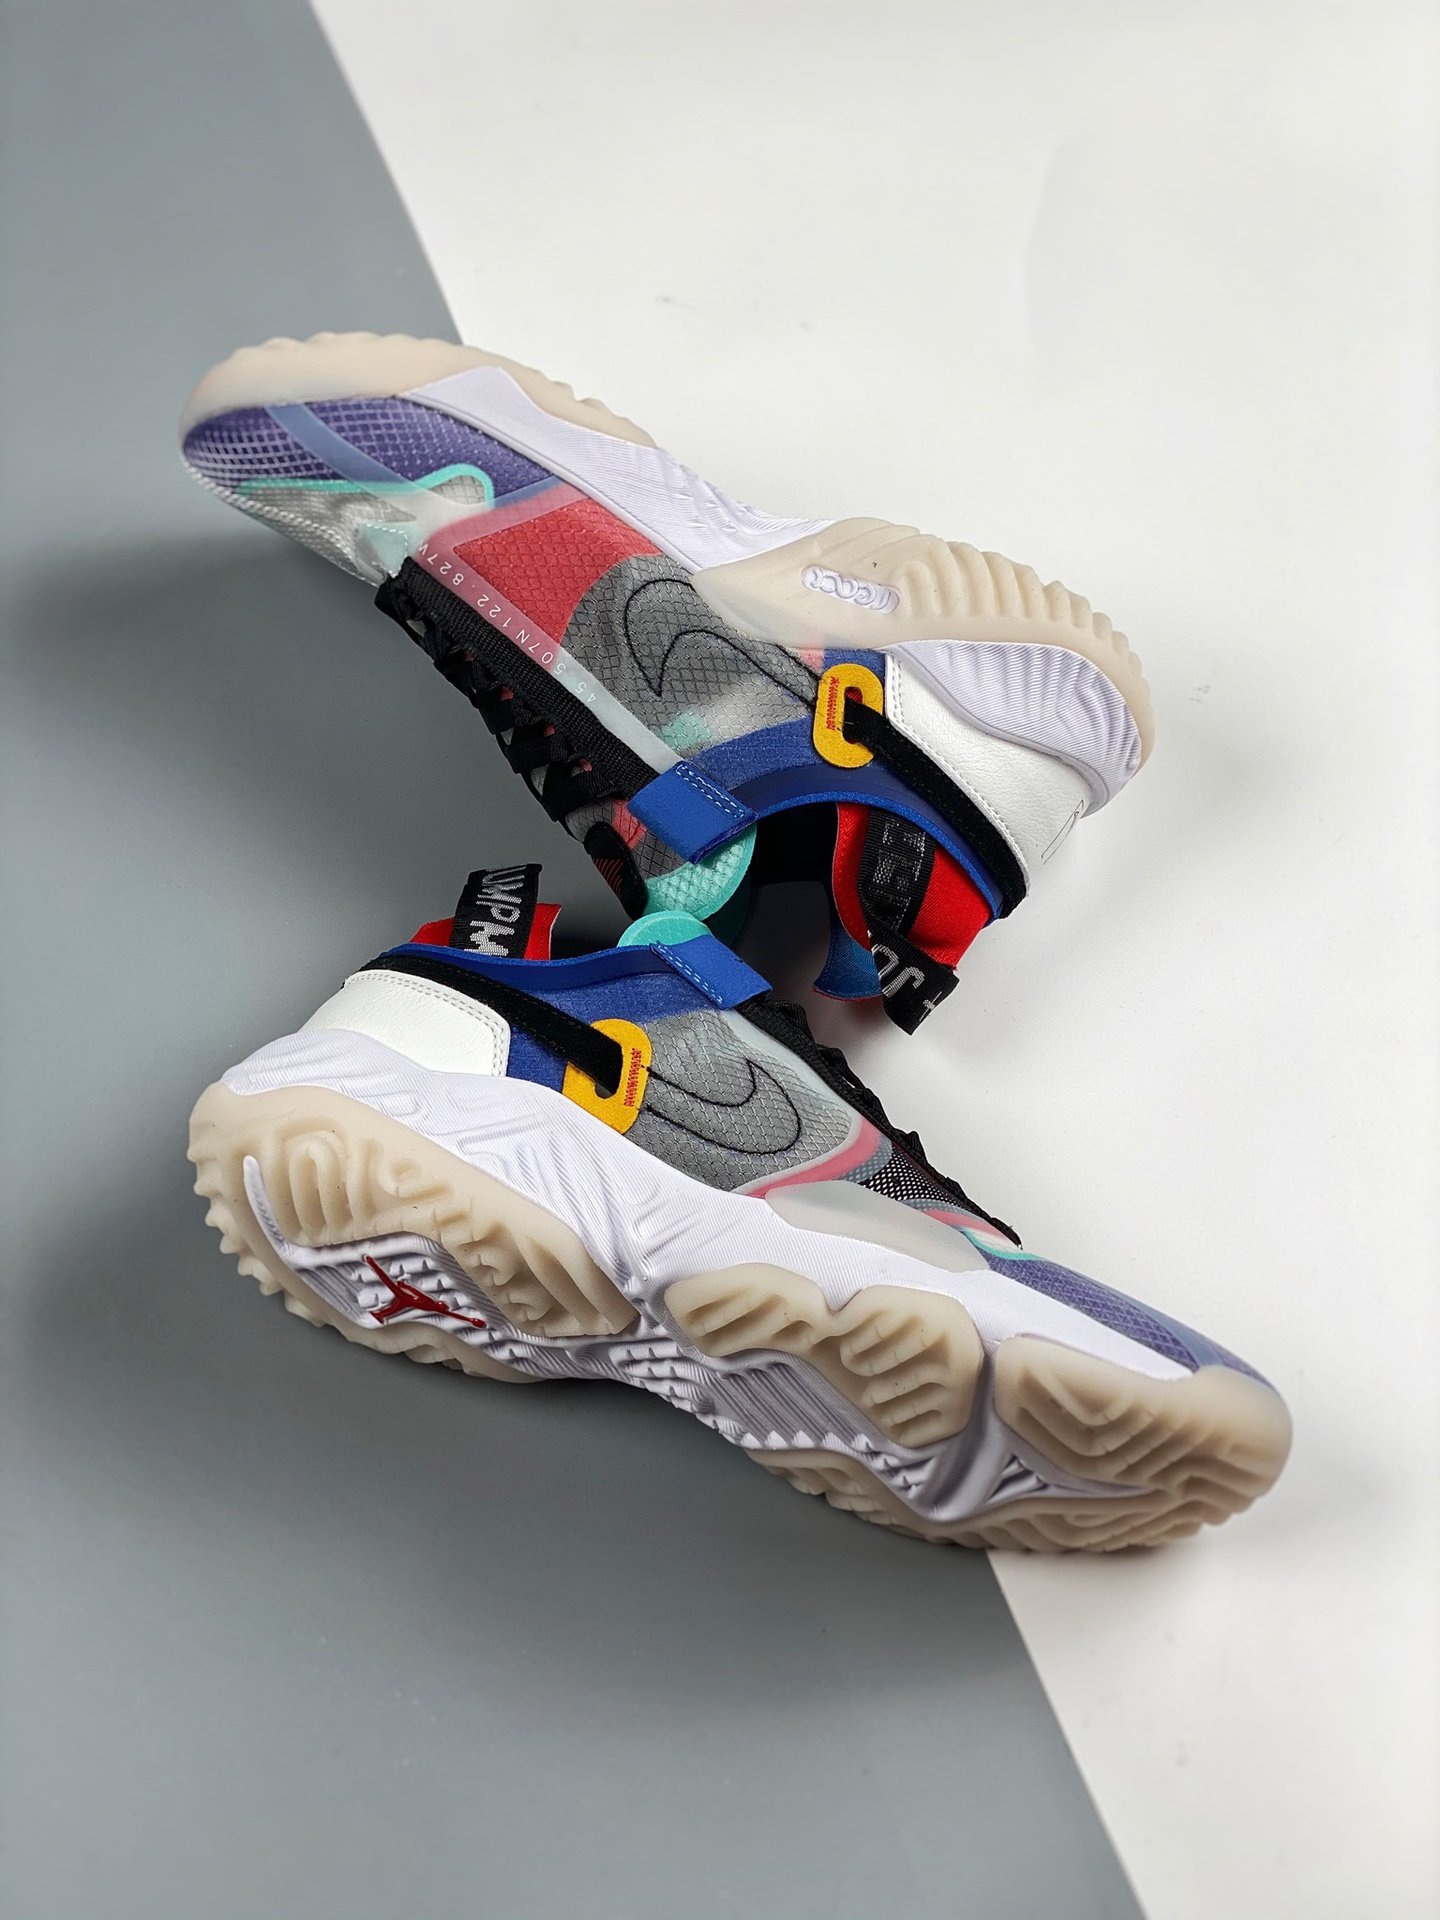 Jordan Delta Breathe “Multi-Color” CW0783-900 For Sale – Sneaker Hello